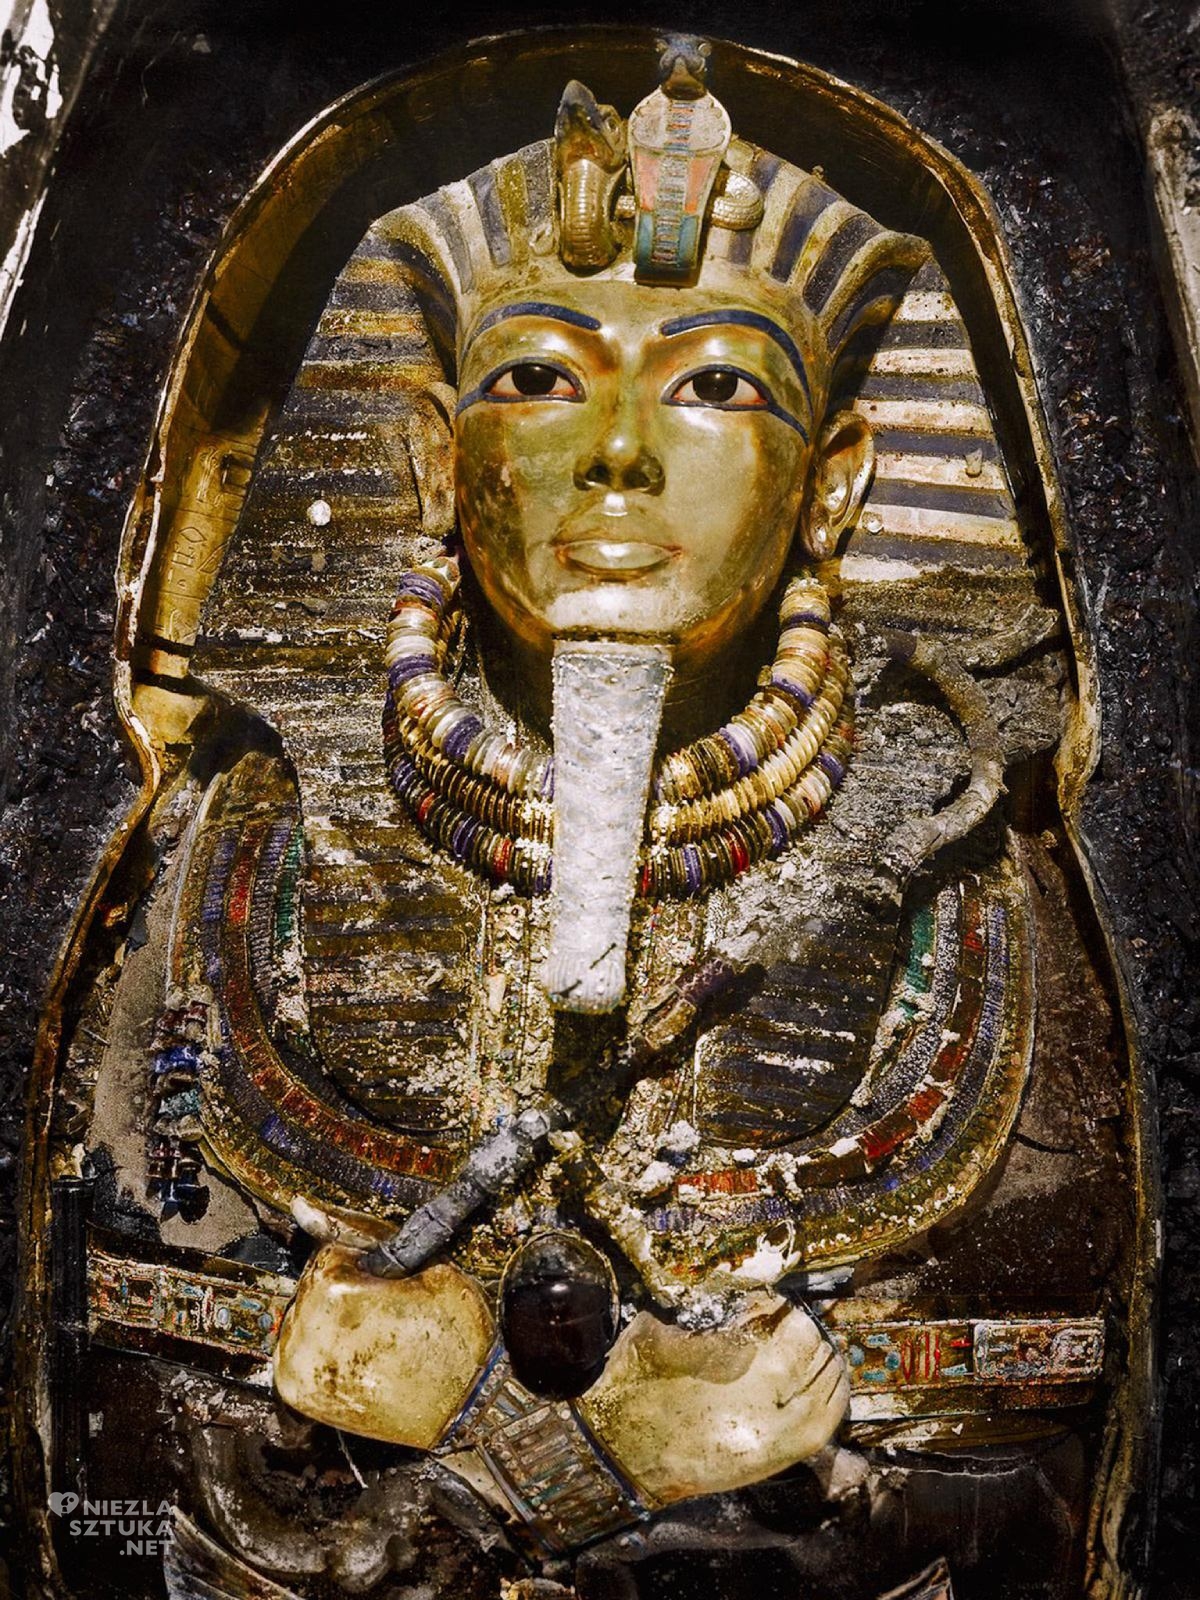 Grobowiec Tutanchamona, Egipt, złota maska, Niezła Sztuka